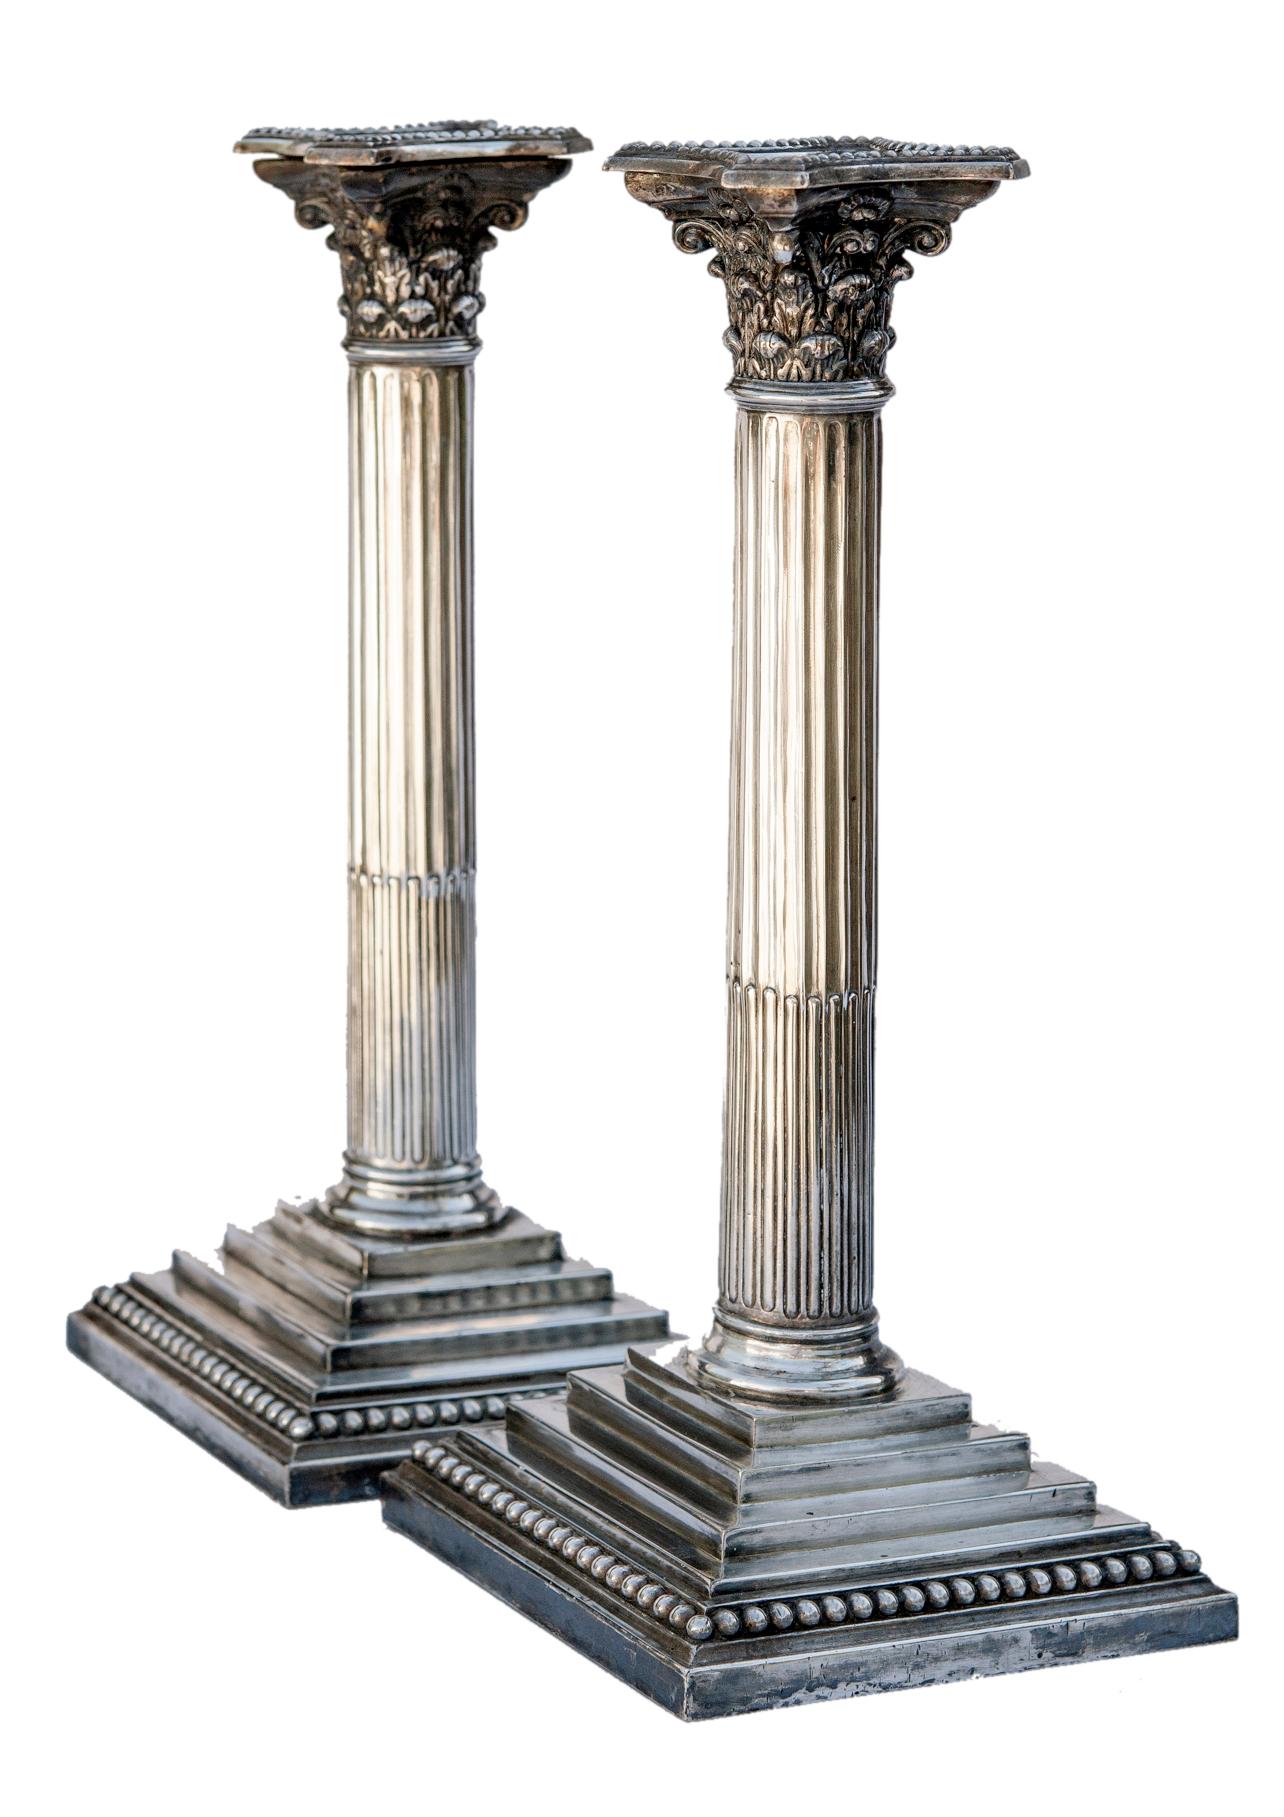 Paar englische Säulenleuchter im neoklassizistischen Stil des späten 19. und frühen 20. Jahrhunderts aus Silberblech.
Quadratische Sockel mit Stufen bis zur Säule. Auf dem quadratischen Sockel stehen kannelierte Rundsäulen.
Hergestellt in Sheffield,